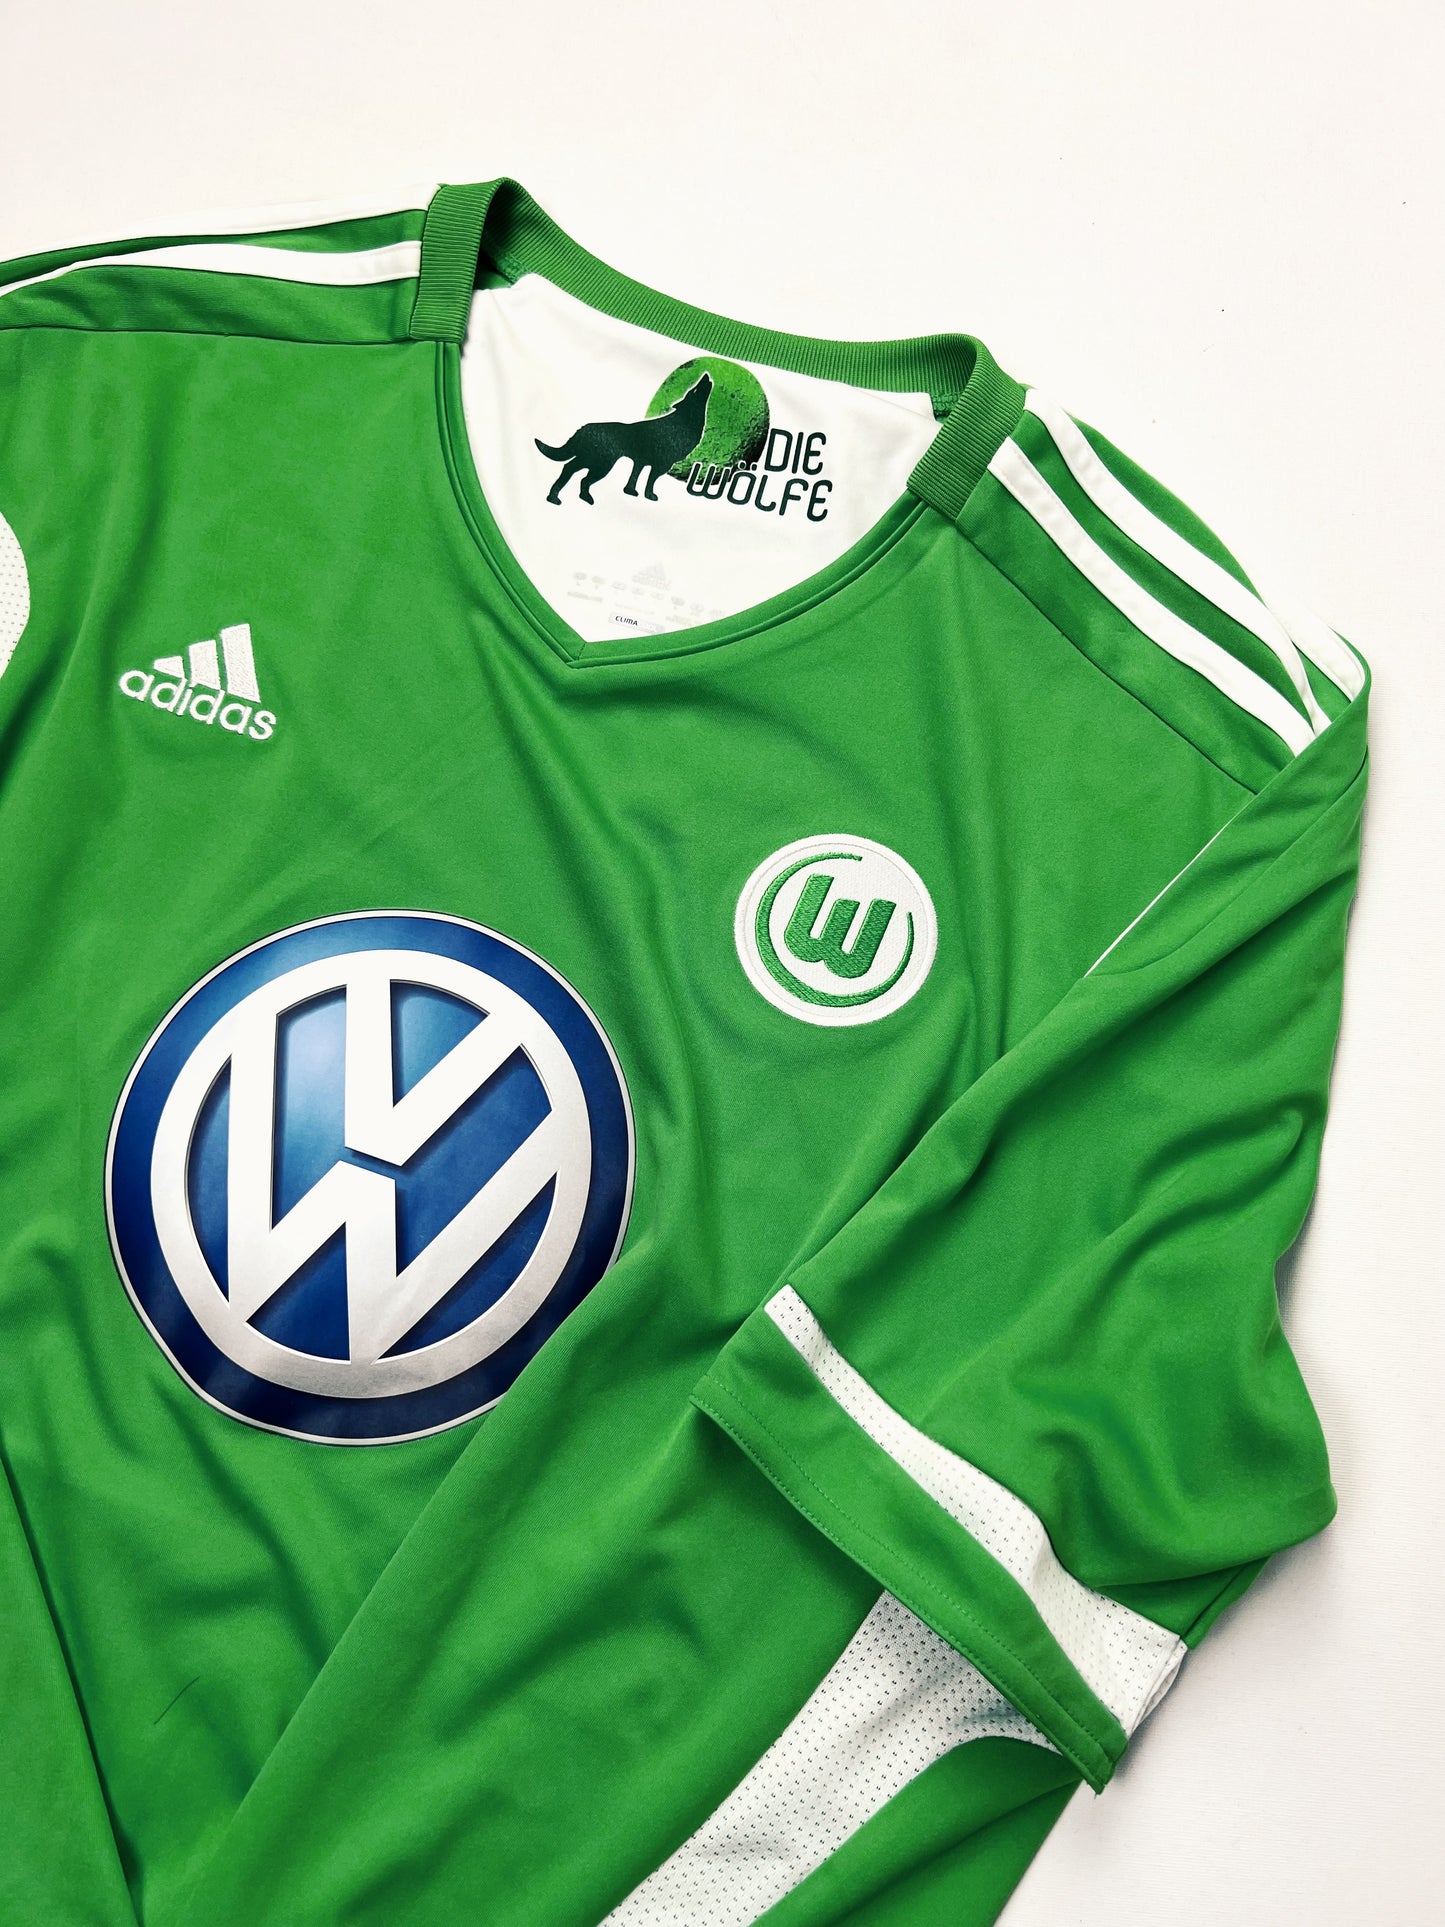 VfL Wolfsburg Home 2011-2012 L